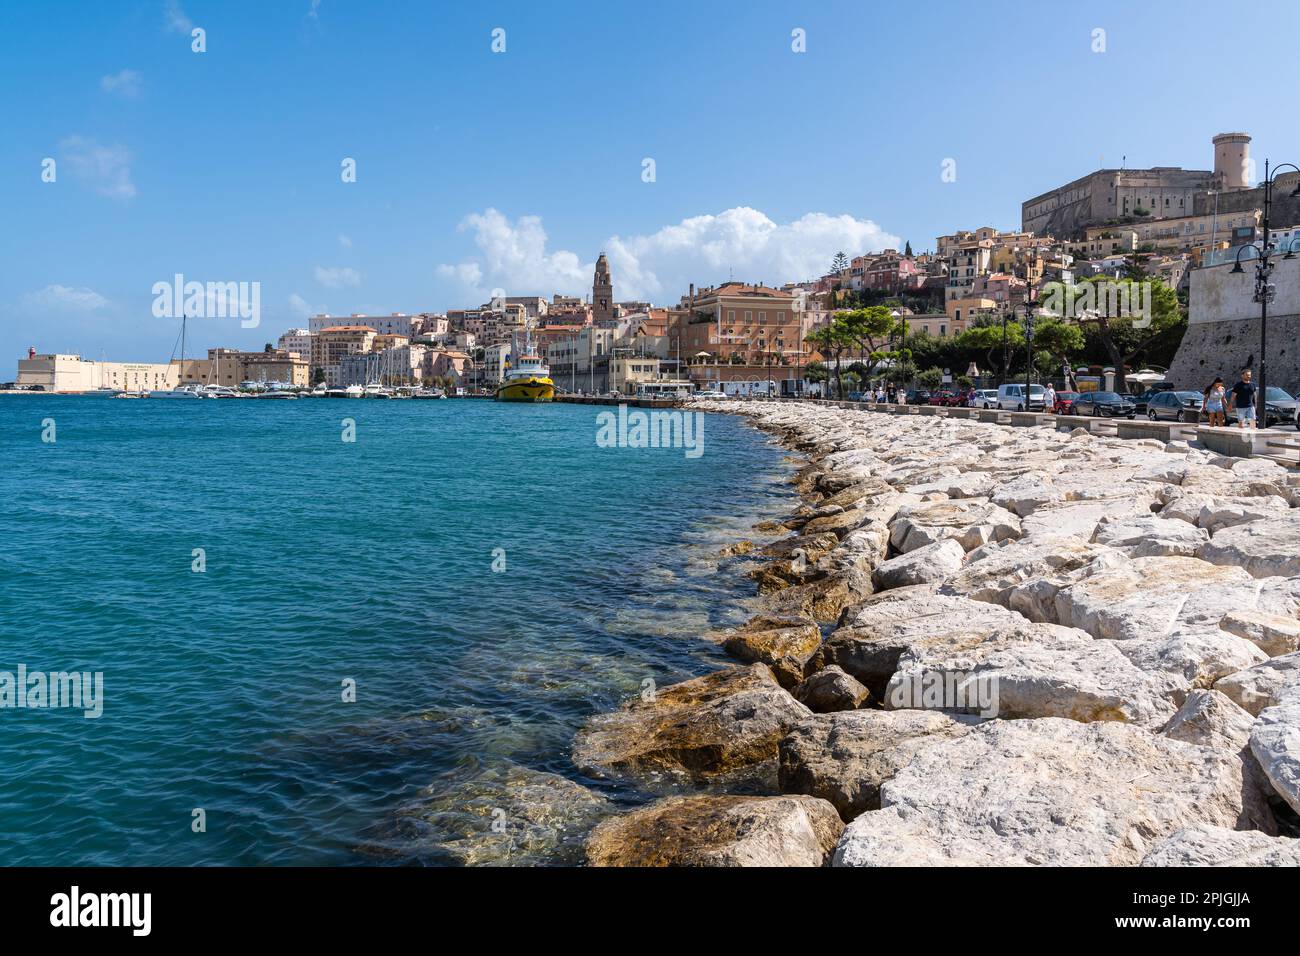 Il lungomare di Gaeta, città storica e meta turistica popolare sul Mar Mediterraneo, Lazio, Italia Foto Stock